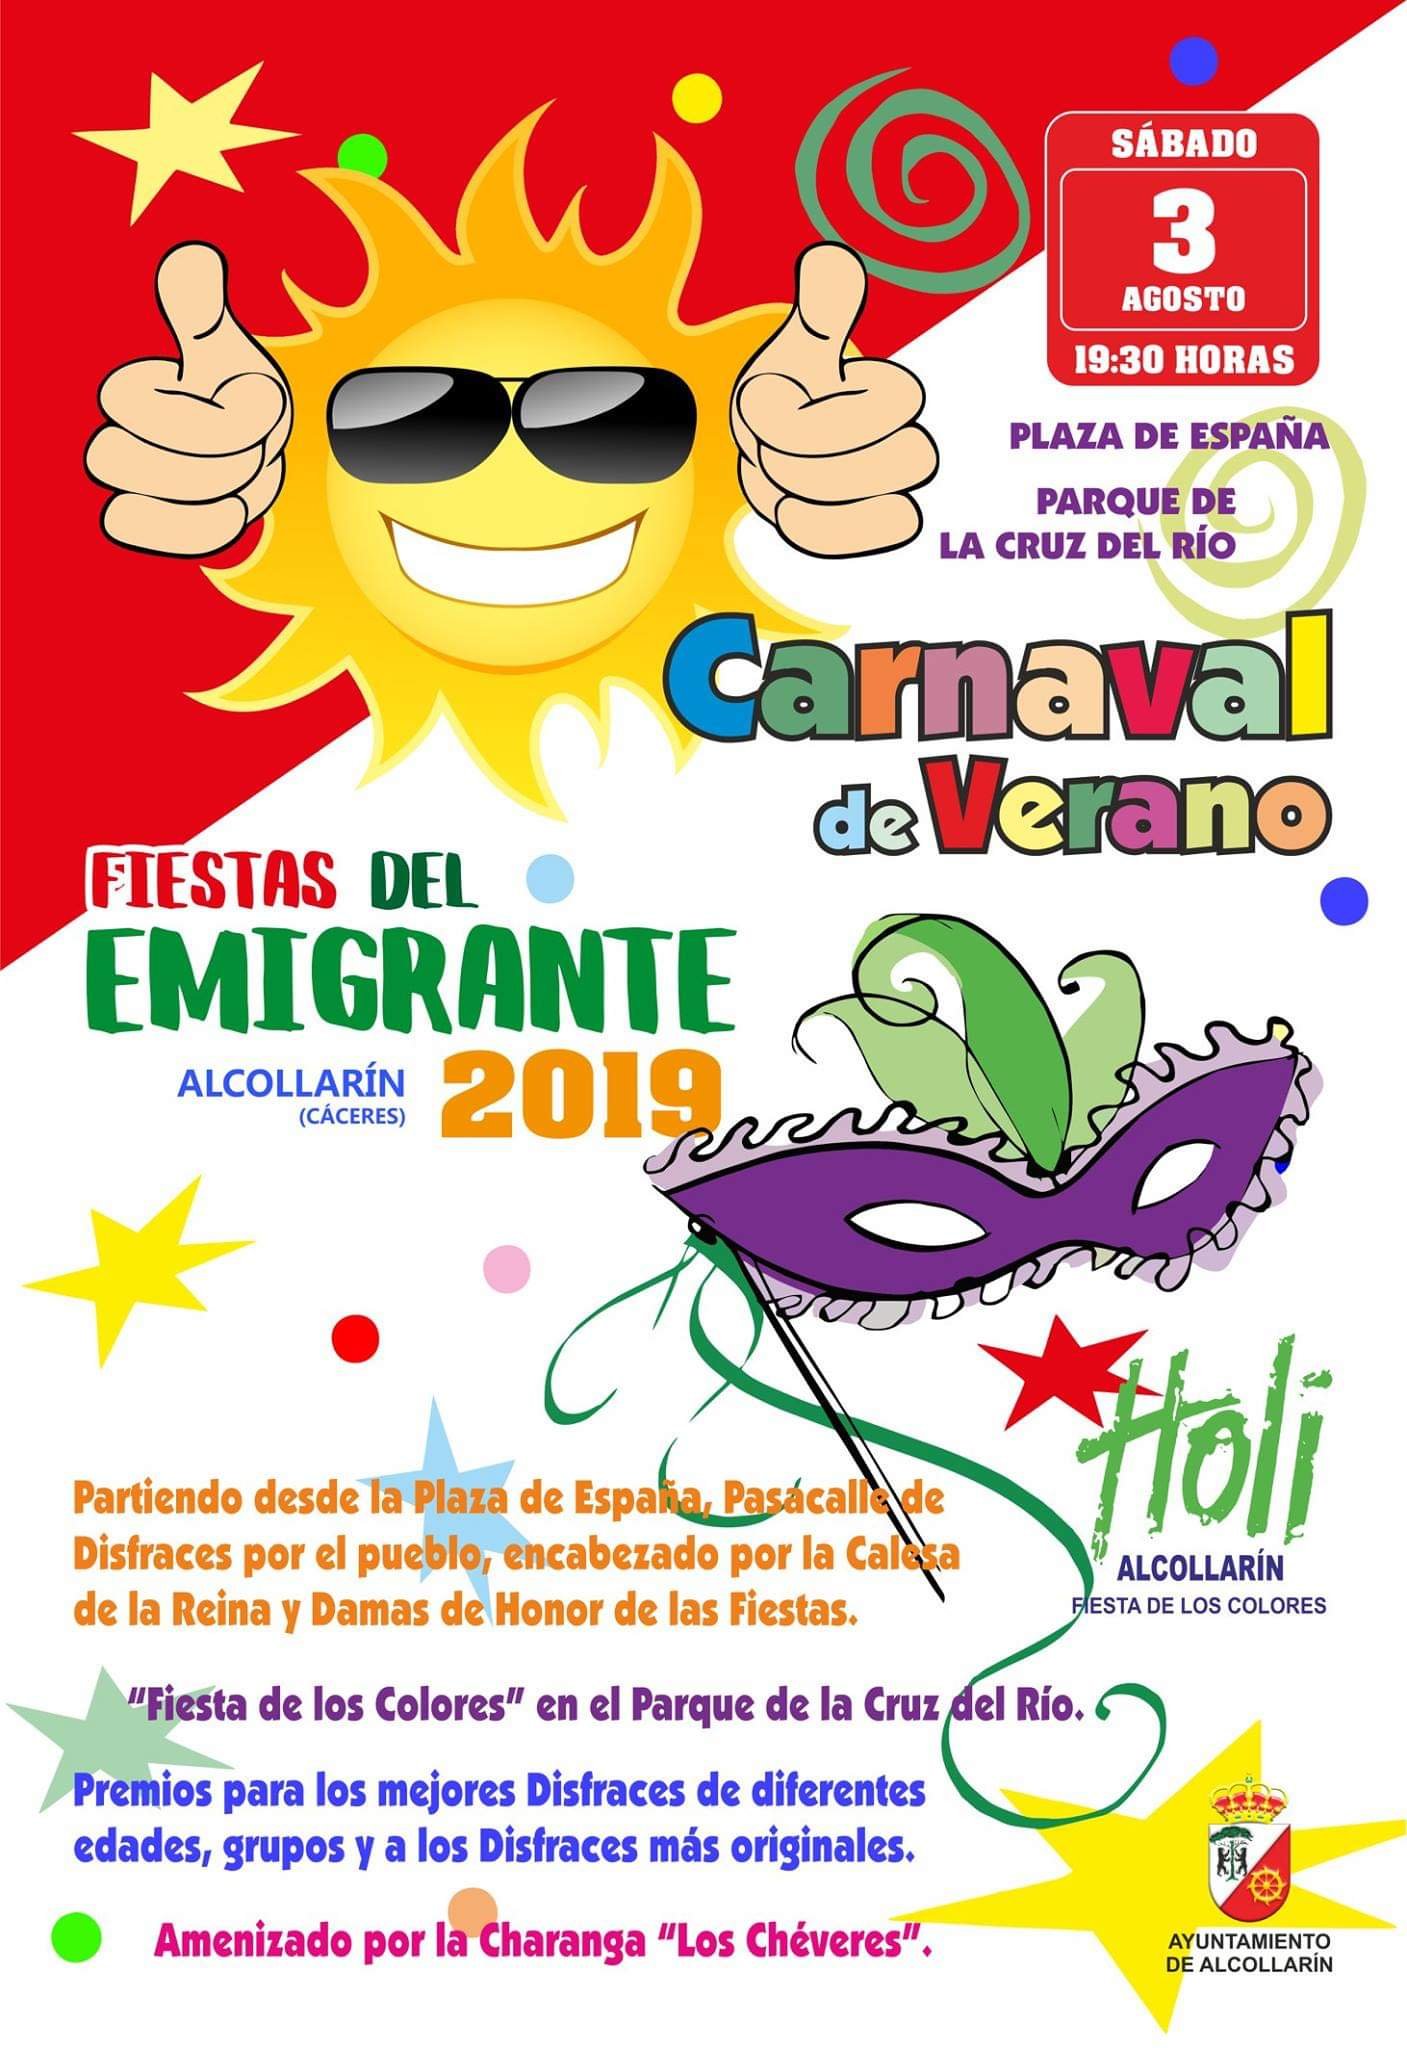 Fiestas del Emigrante 2019 - Alcollarín (Cáceres) 2